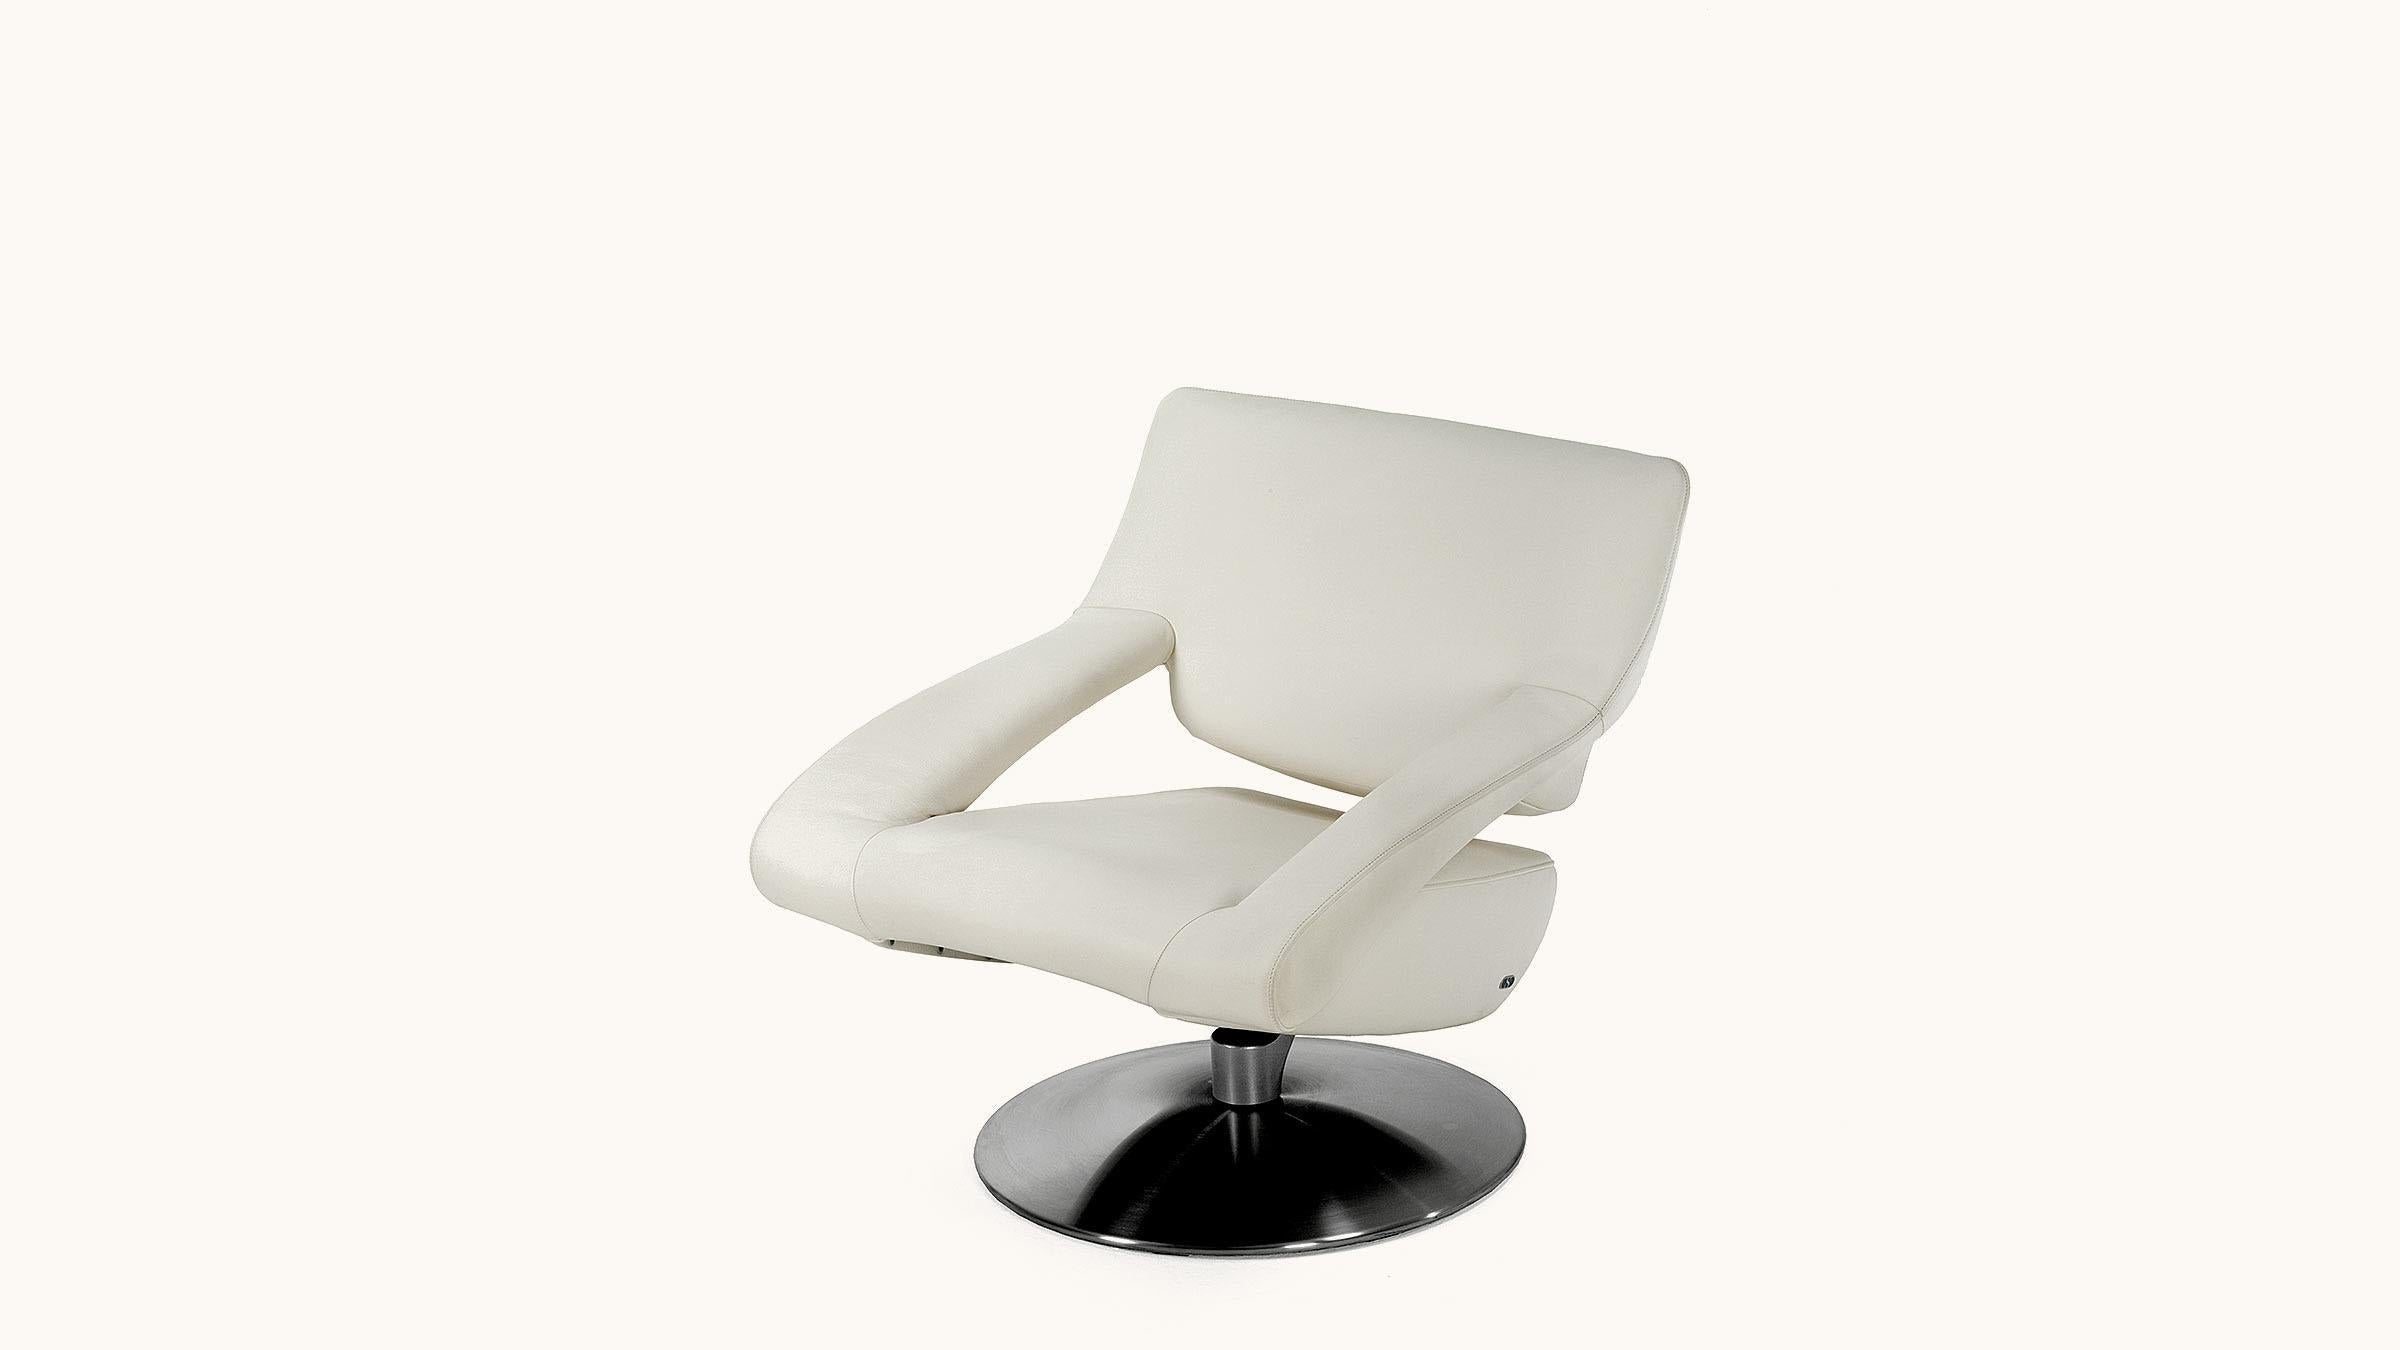 Der Stuhl ist das moderne Einrichtungsobjekt, das die Designer am meisten beschäftigt hat. Kein anderes Möbelstück wurde so sorgfältig getestet, studiert und auf seine Zusammensetzung, seinen Komfort und seine Funktion, sein Herz und seine Lunge hin